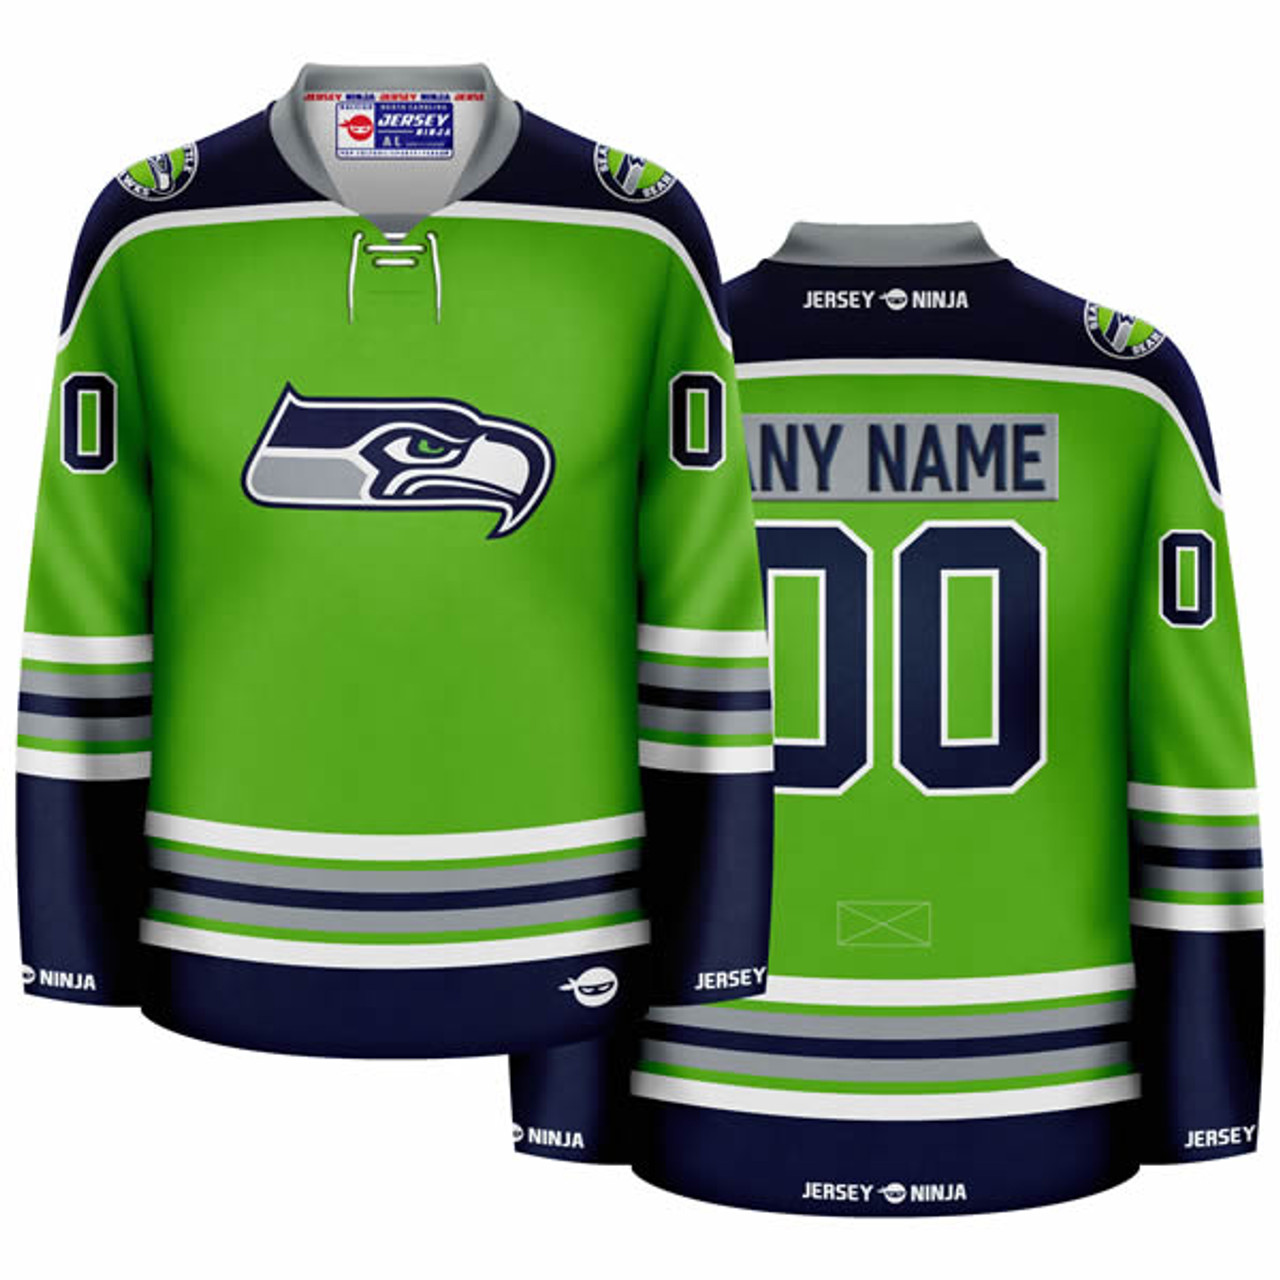 Jersey Ninja - Seattle Seahawks Green Hockey Jersey